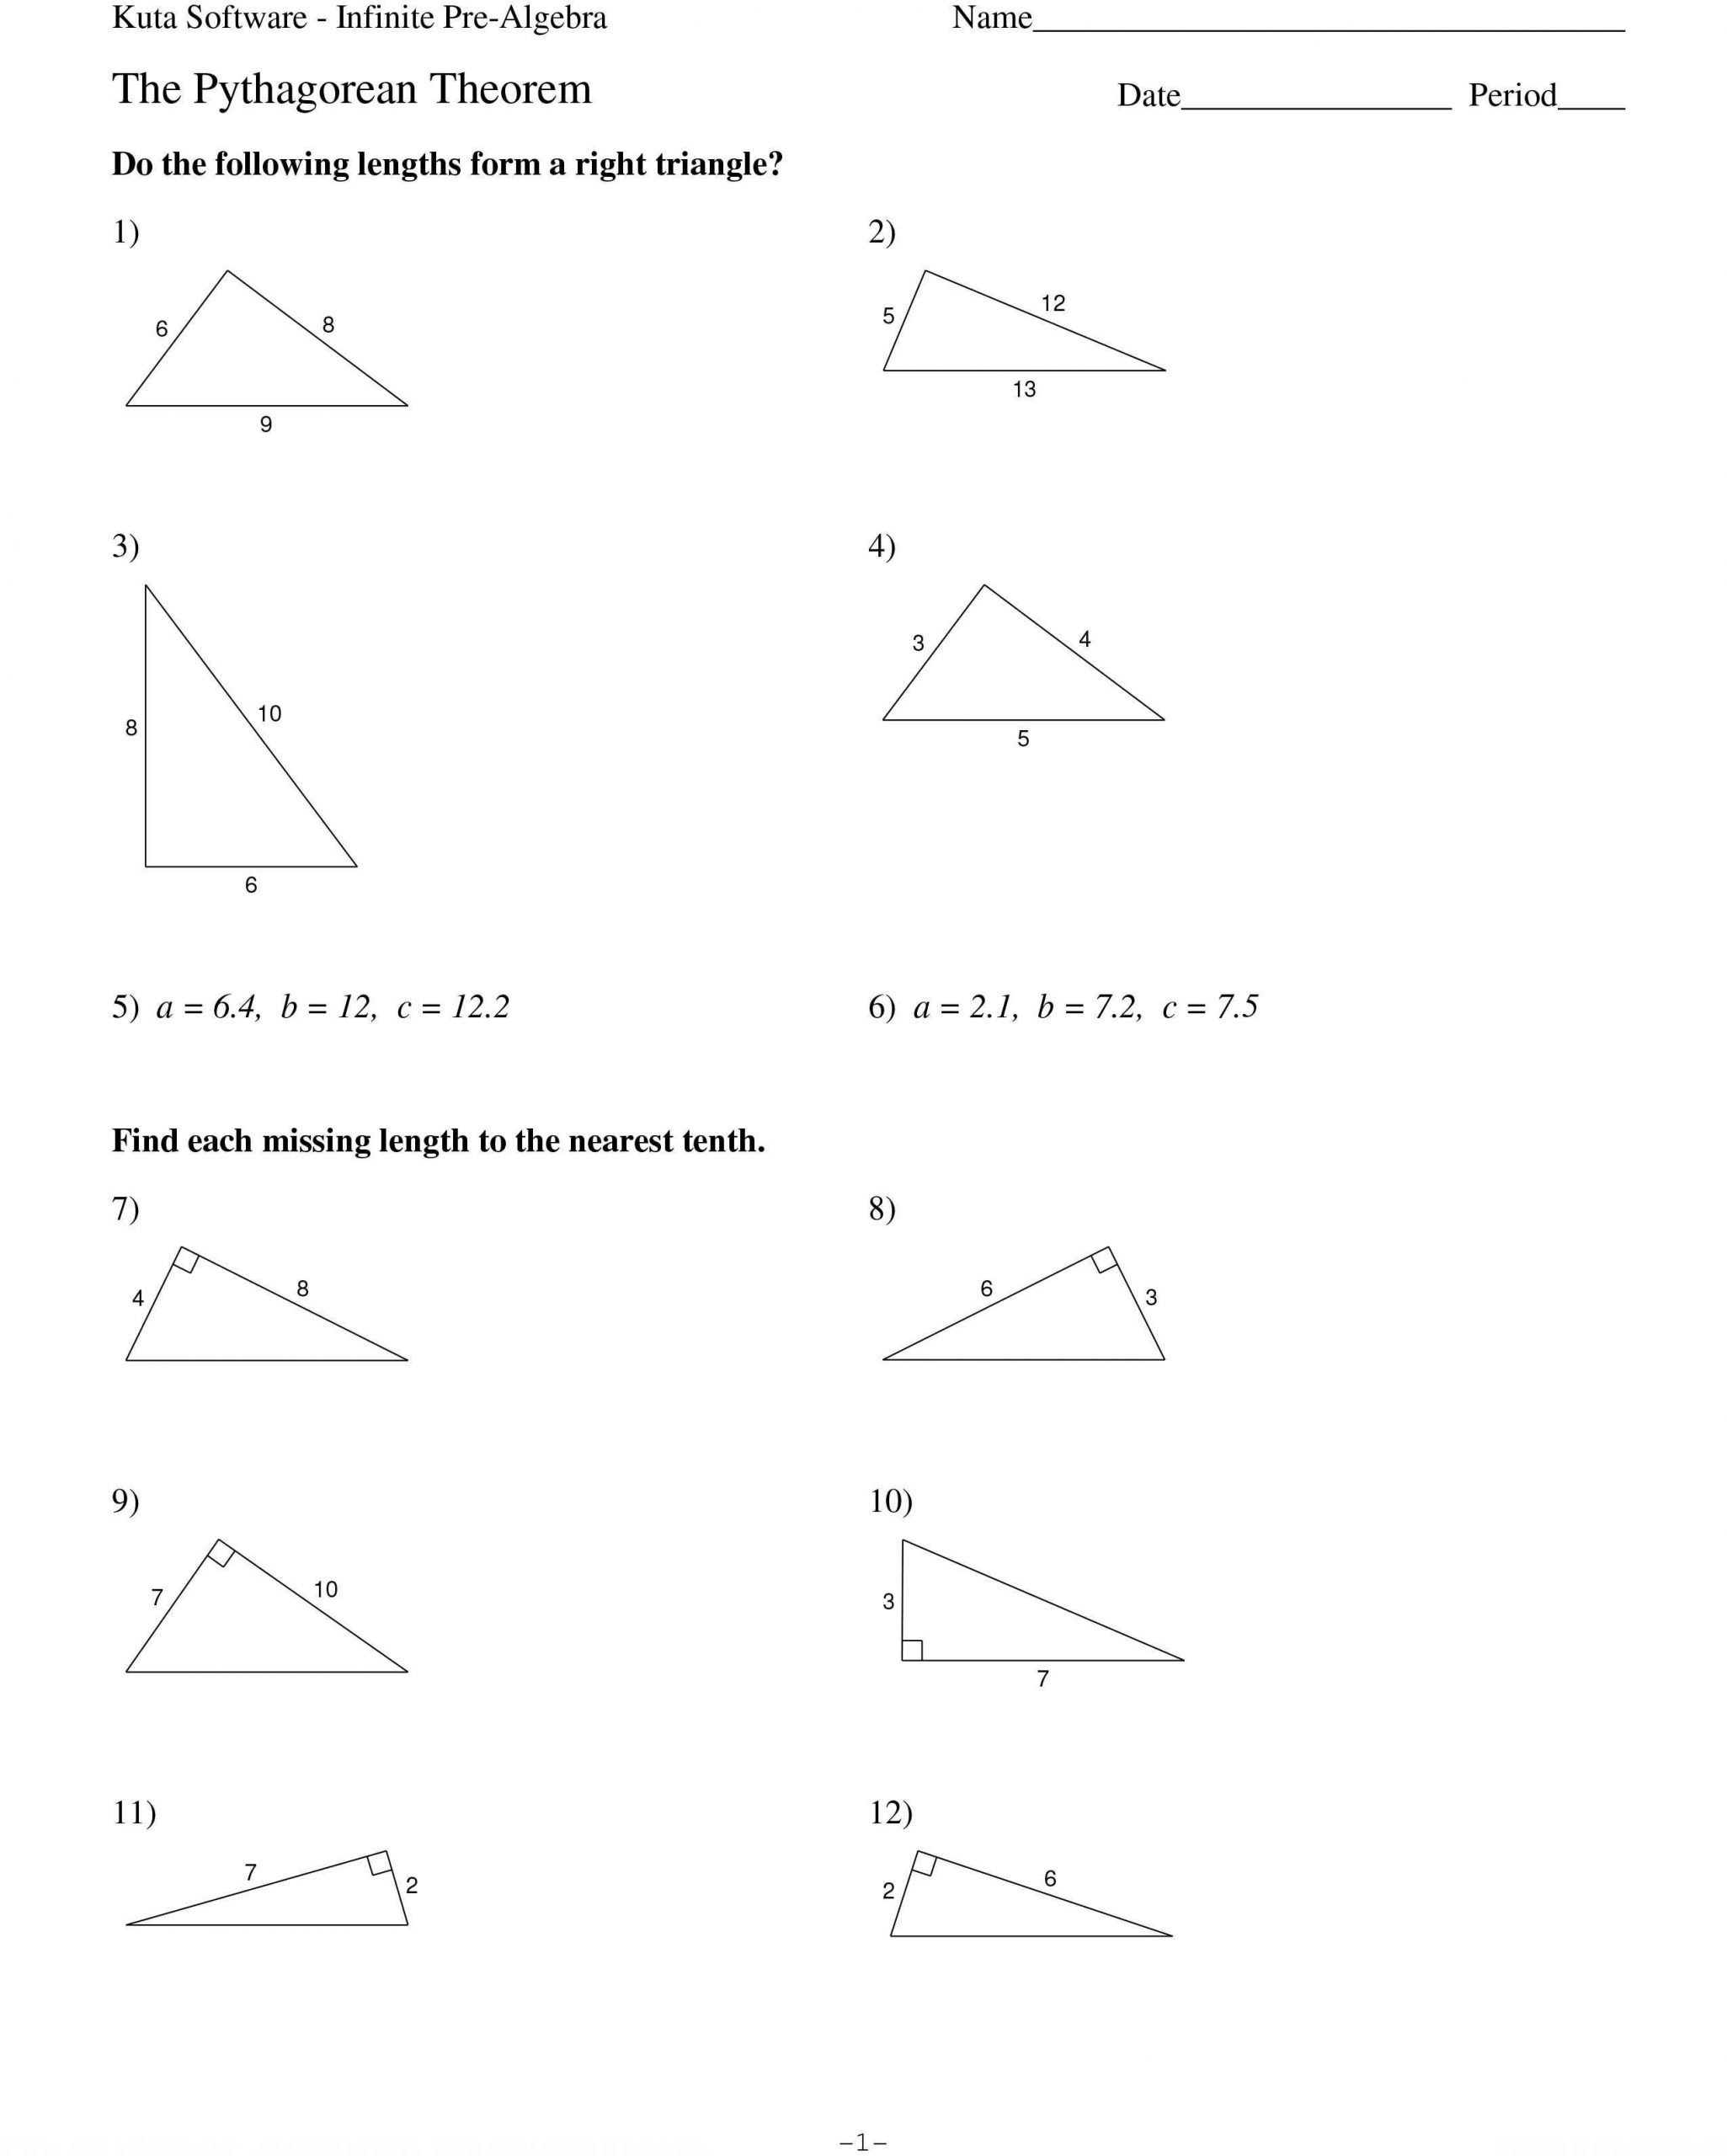 Pythagorean theorem Worksheet Answers 40 Innovative Pythagorean theorem Worksheet for You S